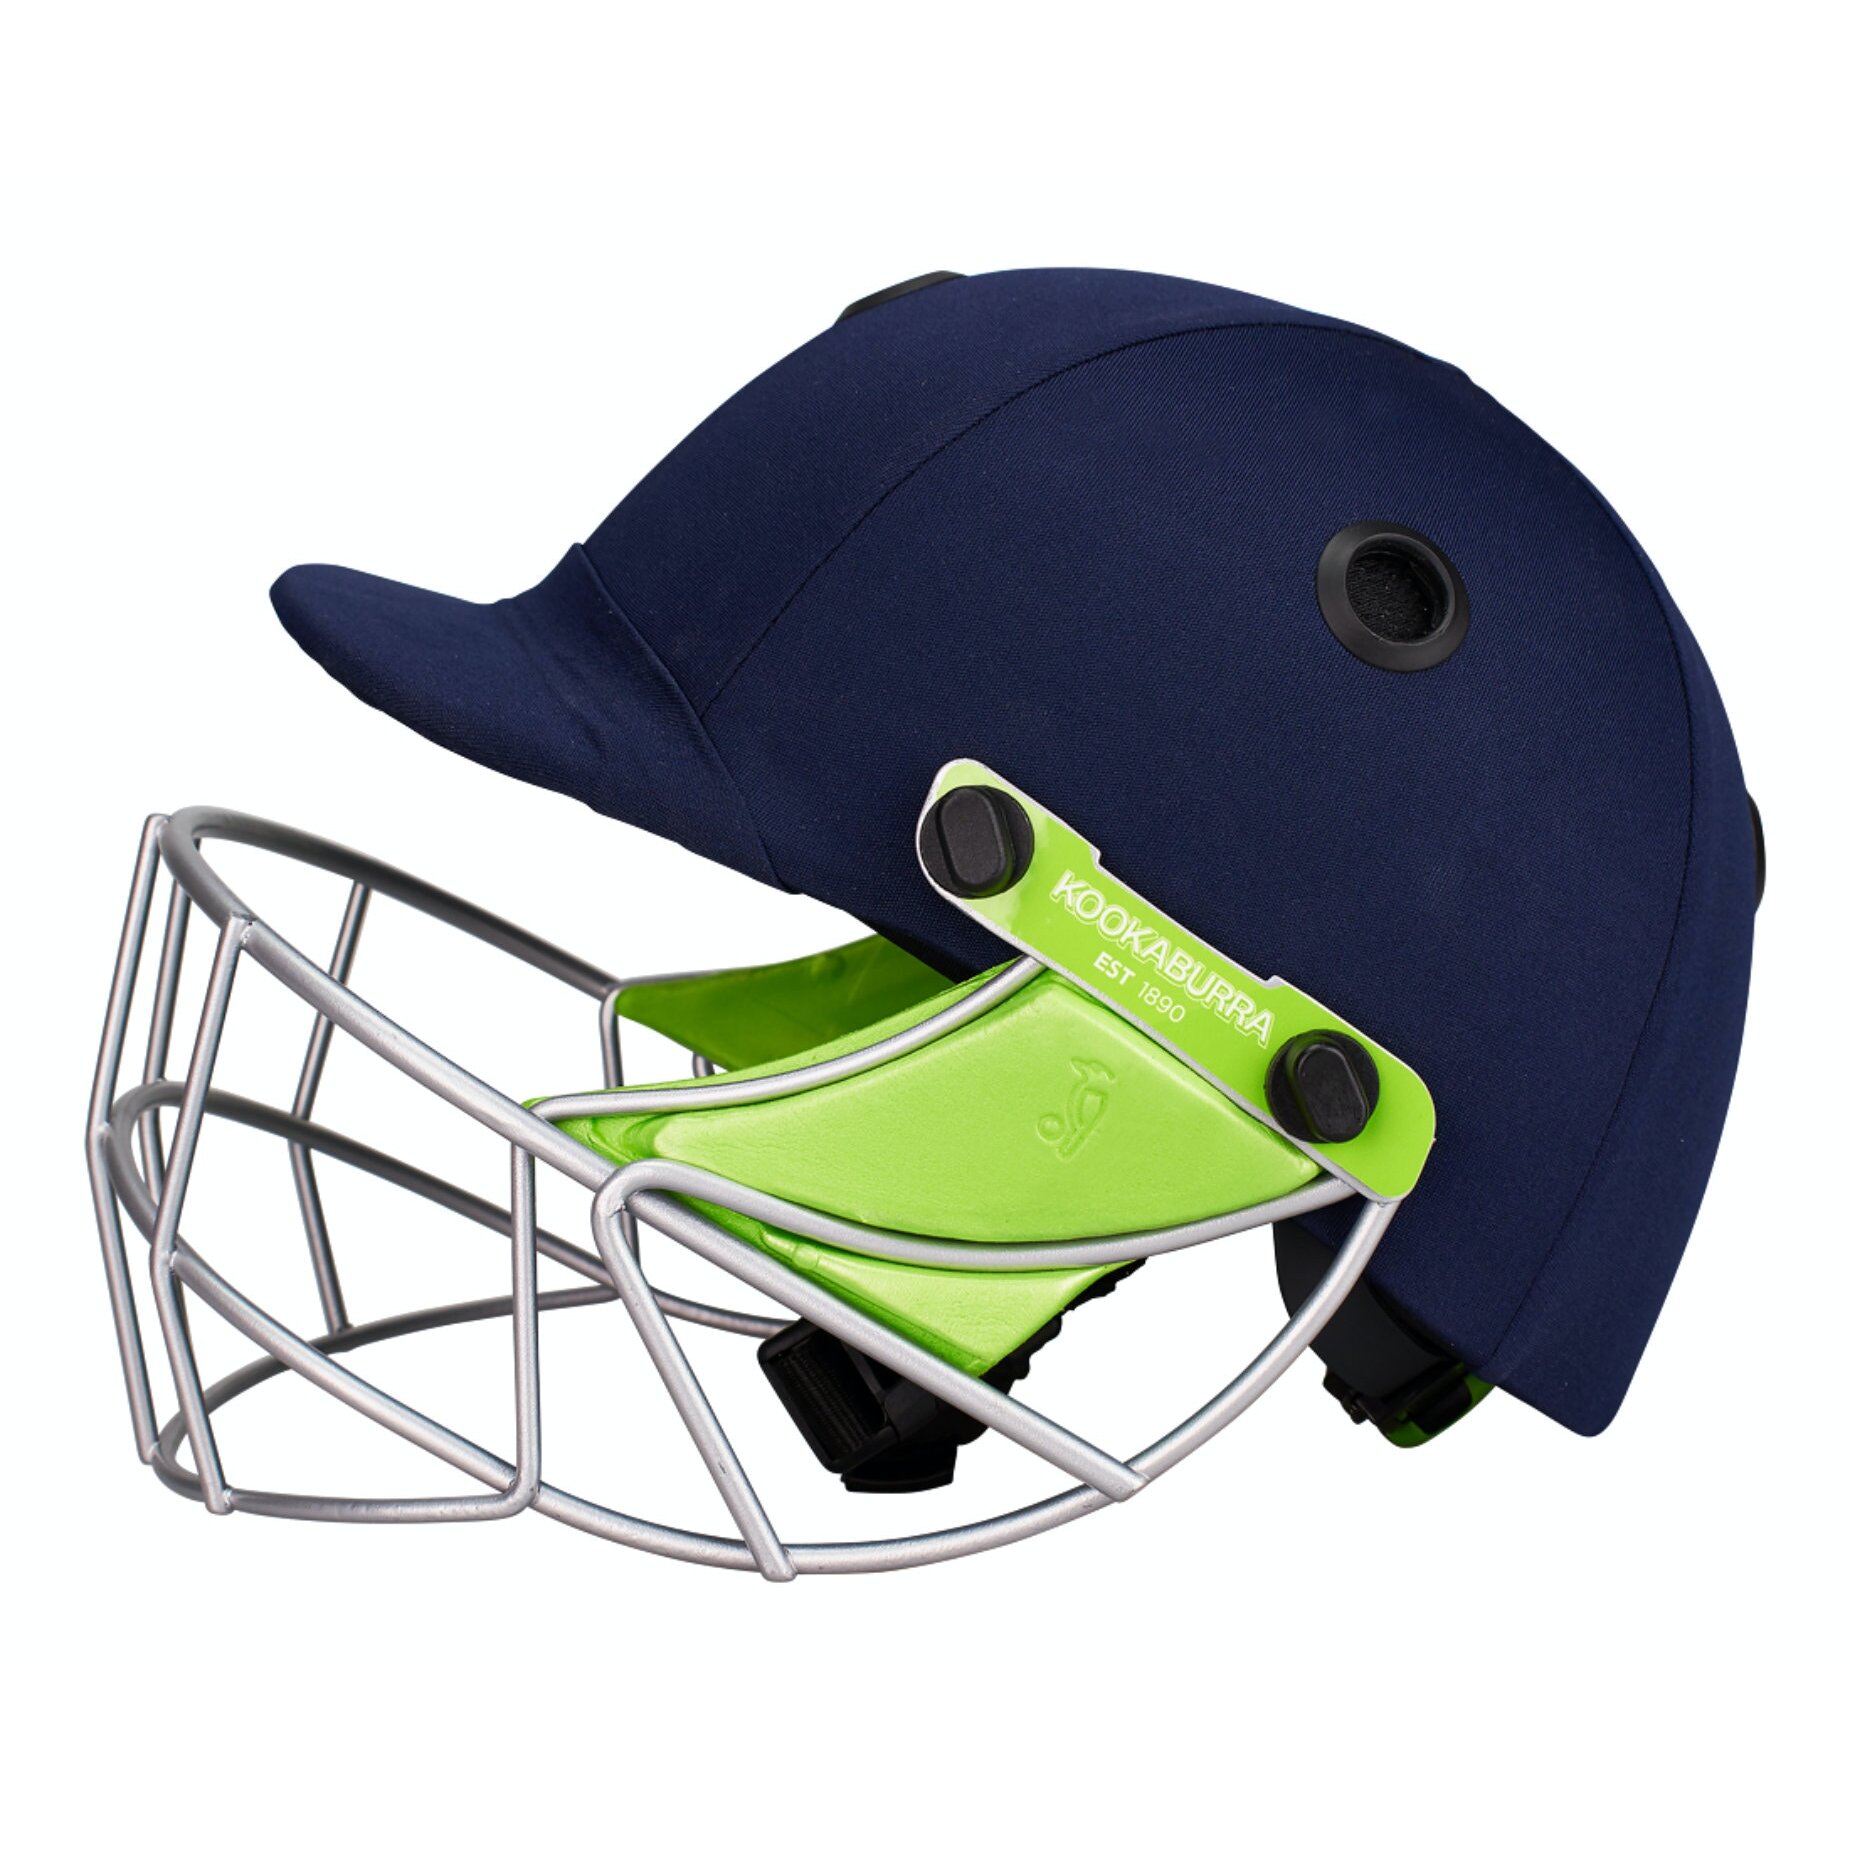 Kookaburra Pro 600F Cricket Helmet XS  Small (54-56 CM)